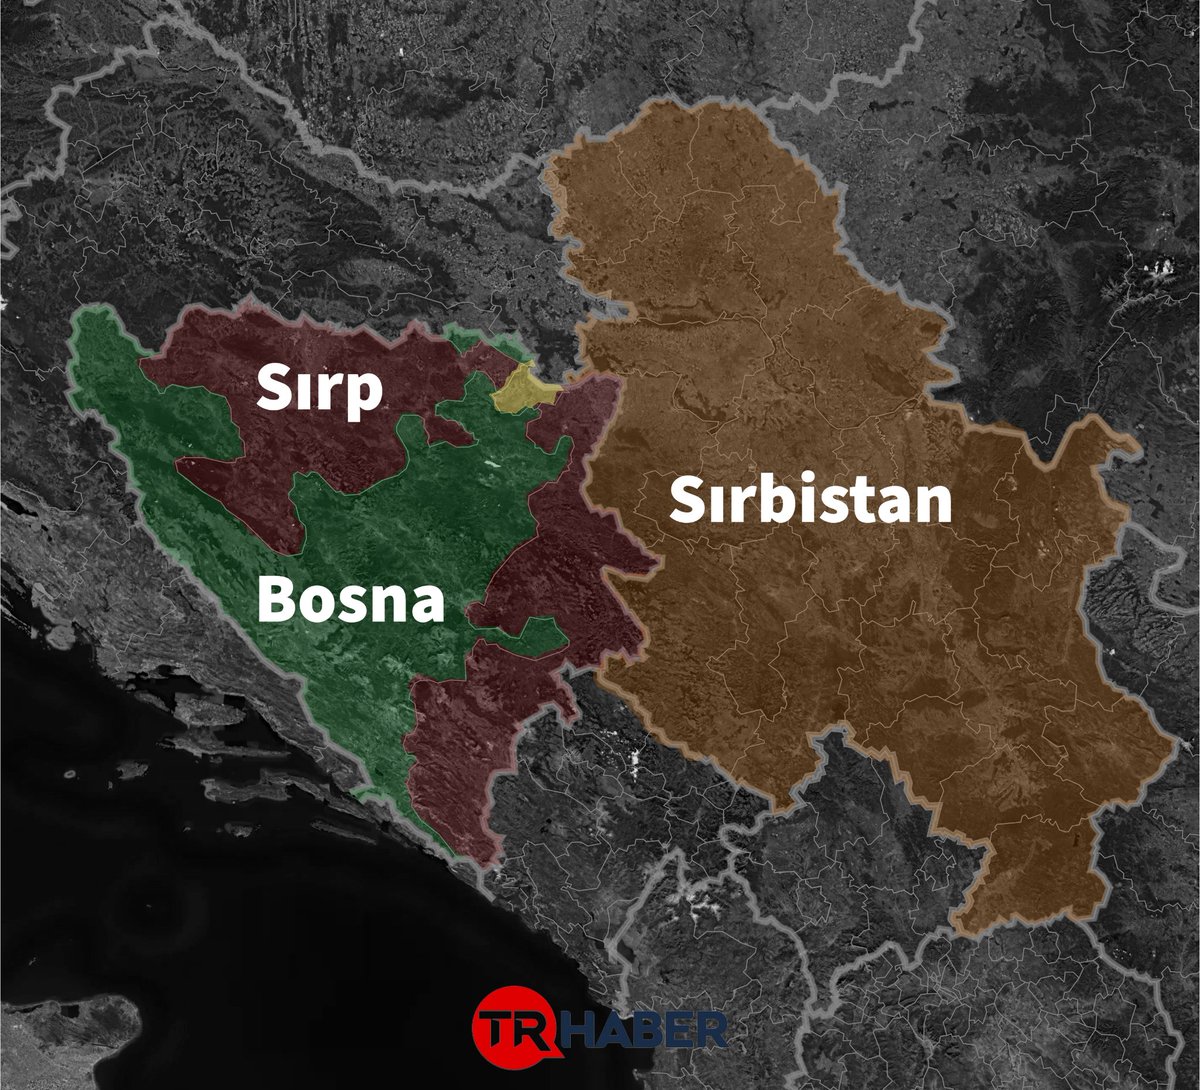 🔴Bosna-Hersek bölünme tehlikesi ile karşı karşıya!

📌Bosna-Hersek'te bulunan Sırp cumhuriyetinin lideri Dodik, BM'nin Srebrenitsa kararı sonrası Bosna'ya İki taraflı ayrılık önereceklerini açıkladı.

🗣️Sırp Cumhurbaşkanı Dodik:

“BM'nin Srebrenitsa kararıyla birlikte Bosna